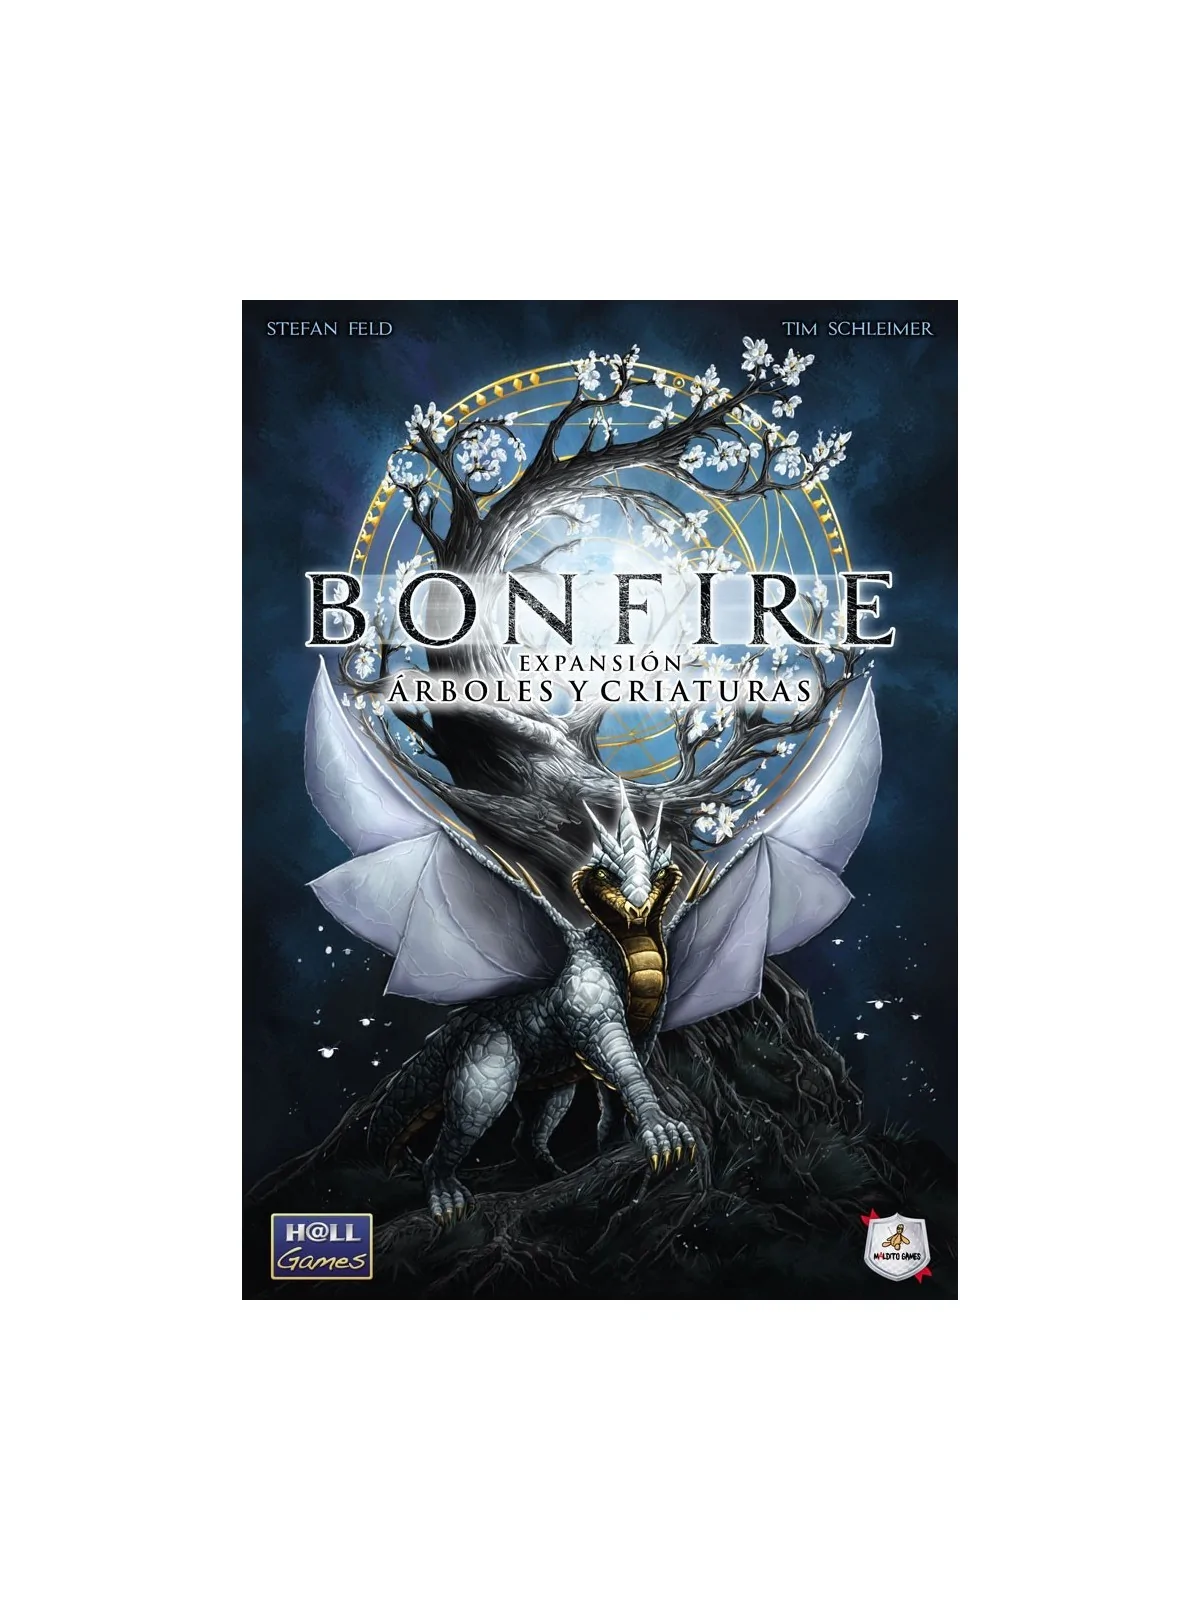 Comprar Bonfire: Árboles y Criaturas barato al mejor precio 27,00 € de